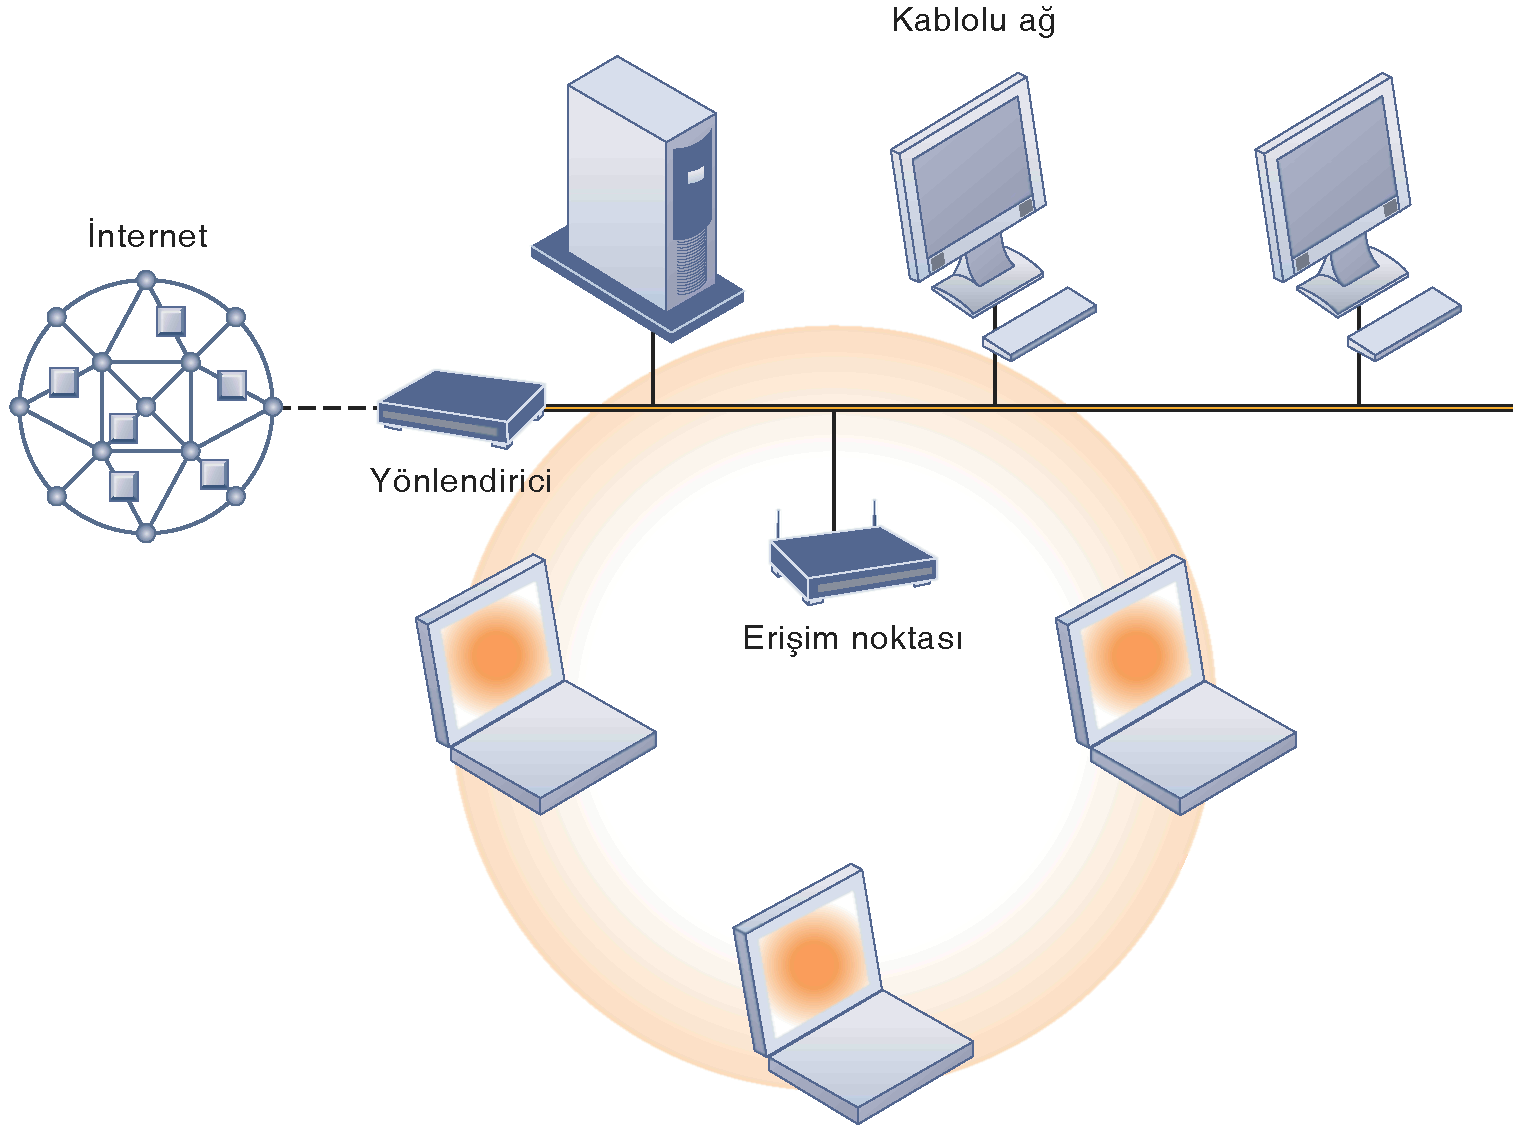 Kablosuz Devrim 802.11 KABLOSUZ AĞ ALANI Ağ kartları bulunan mobil dizüstü bilgisayarlar erişim noktasıyla iletişime geçerek kablolu LAN a bağlanabilirler.